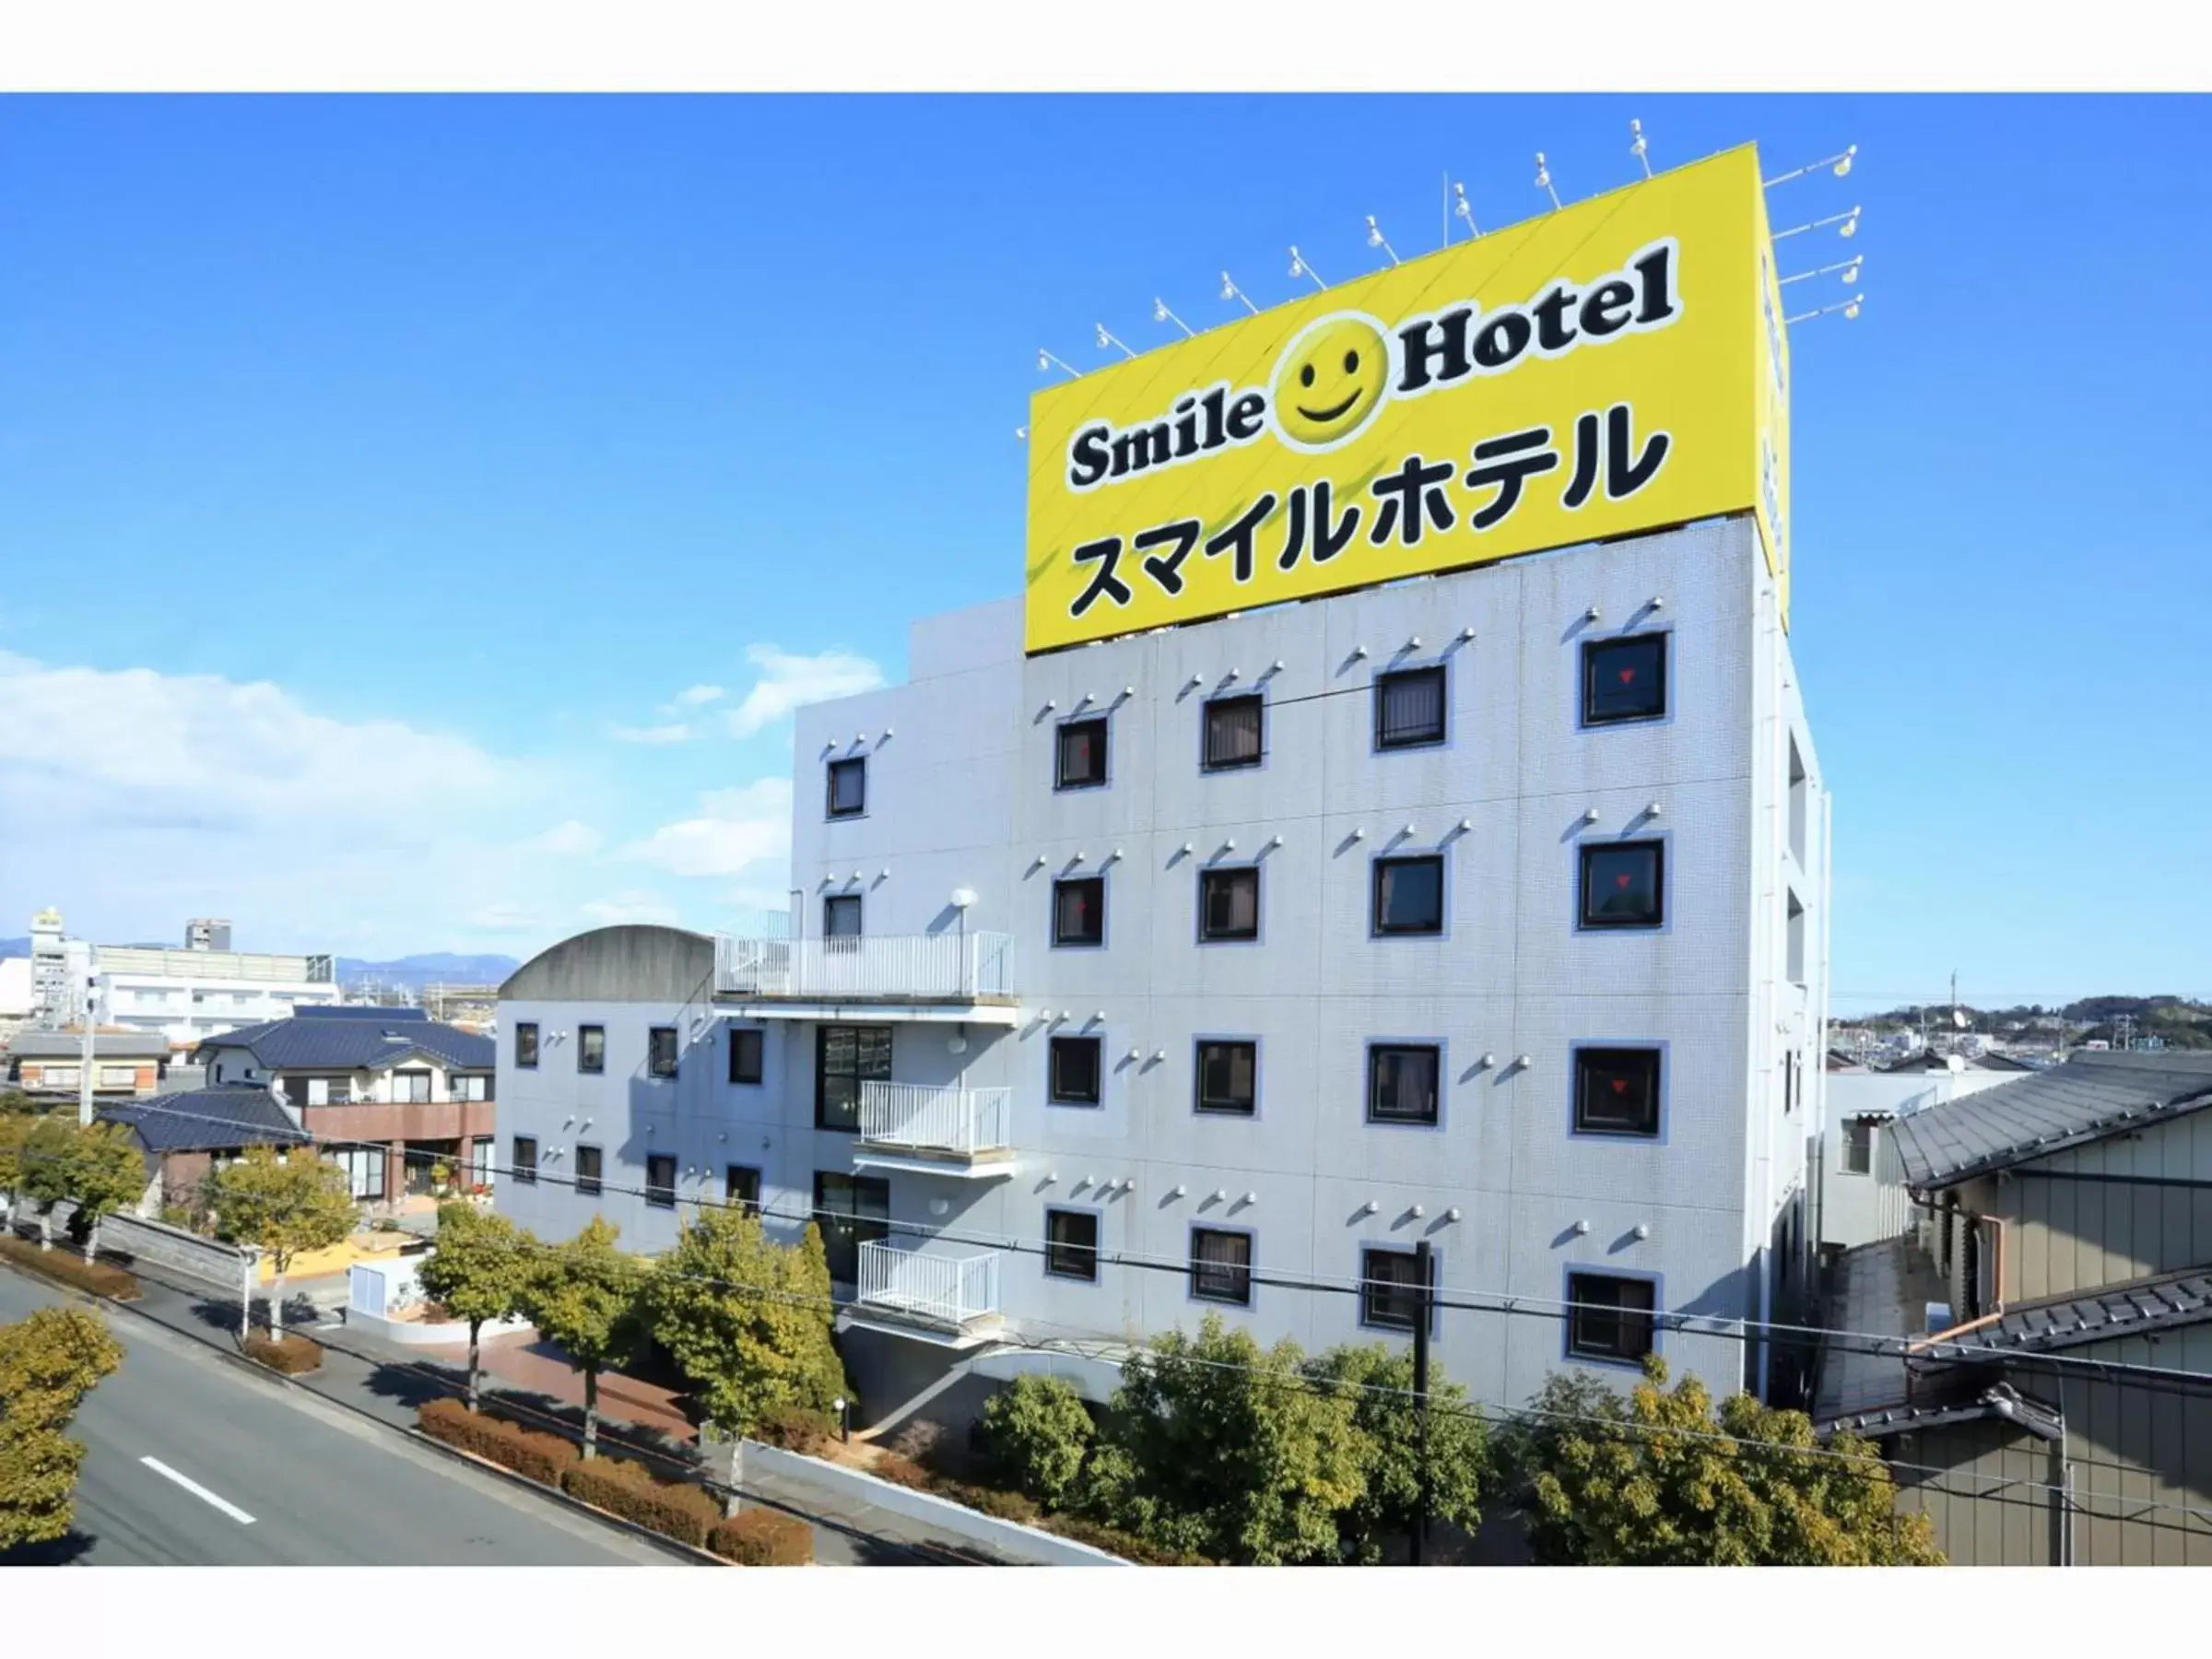 Property building in Smile Hotel Kakegawa